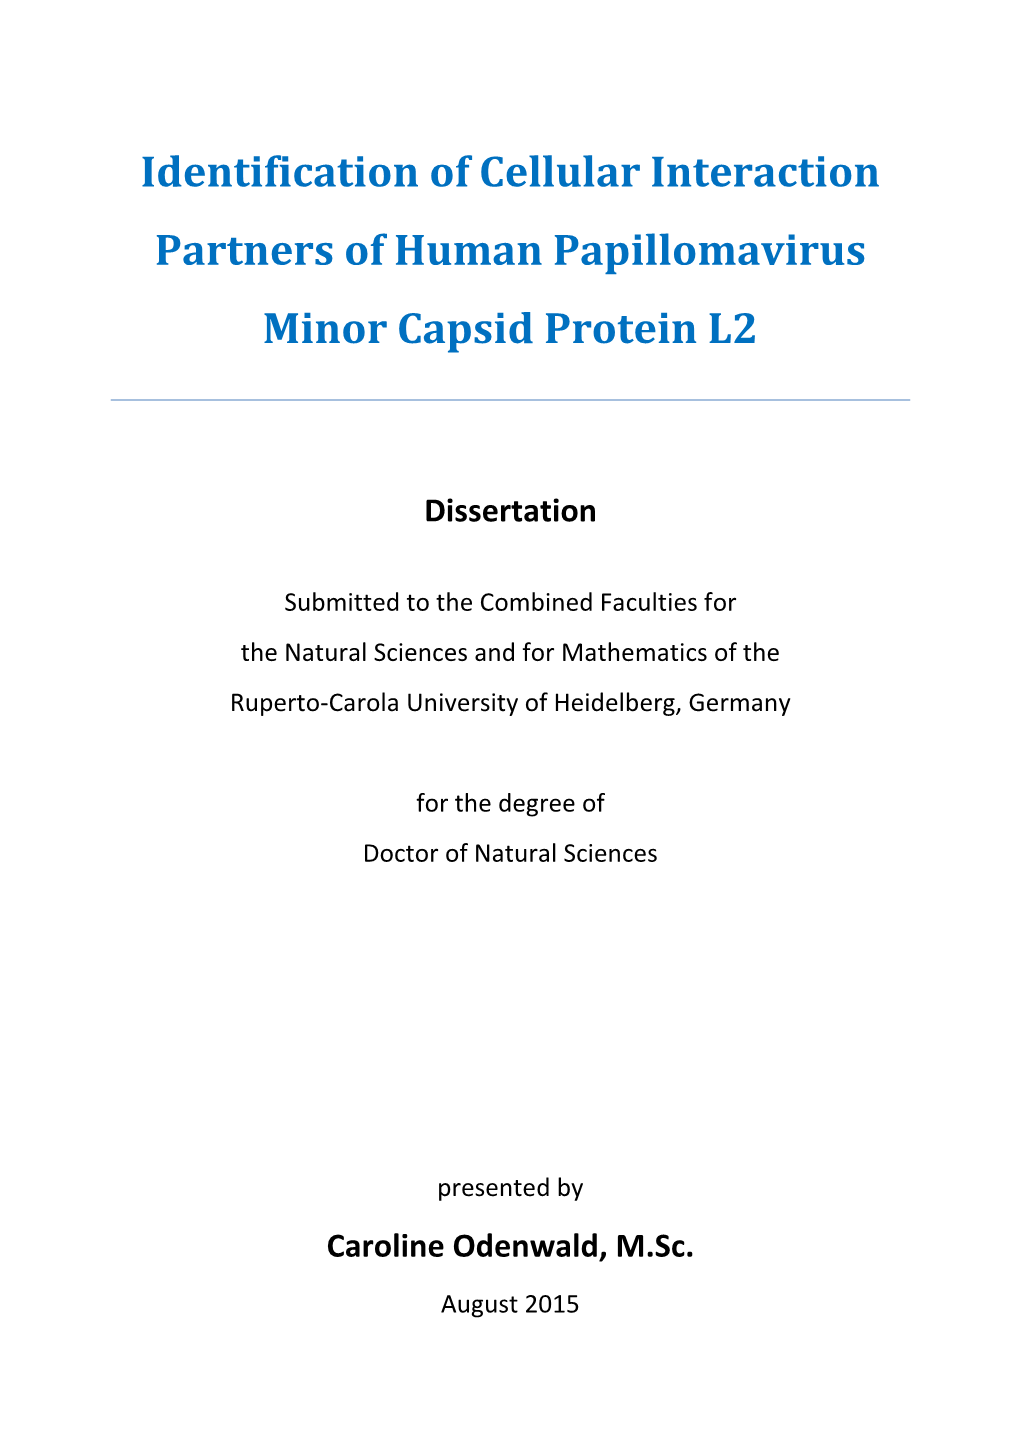 Identification of Cellular Interaction Partners of Human Papillomavirus Minor Capsid Protein L2